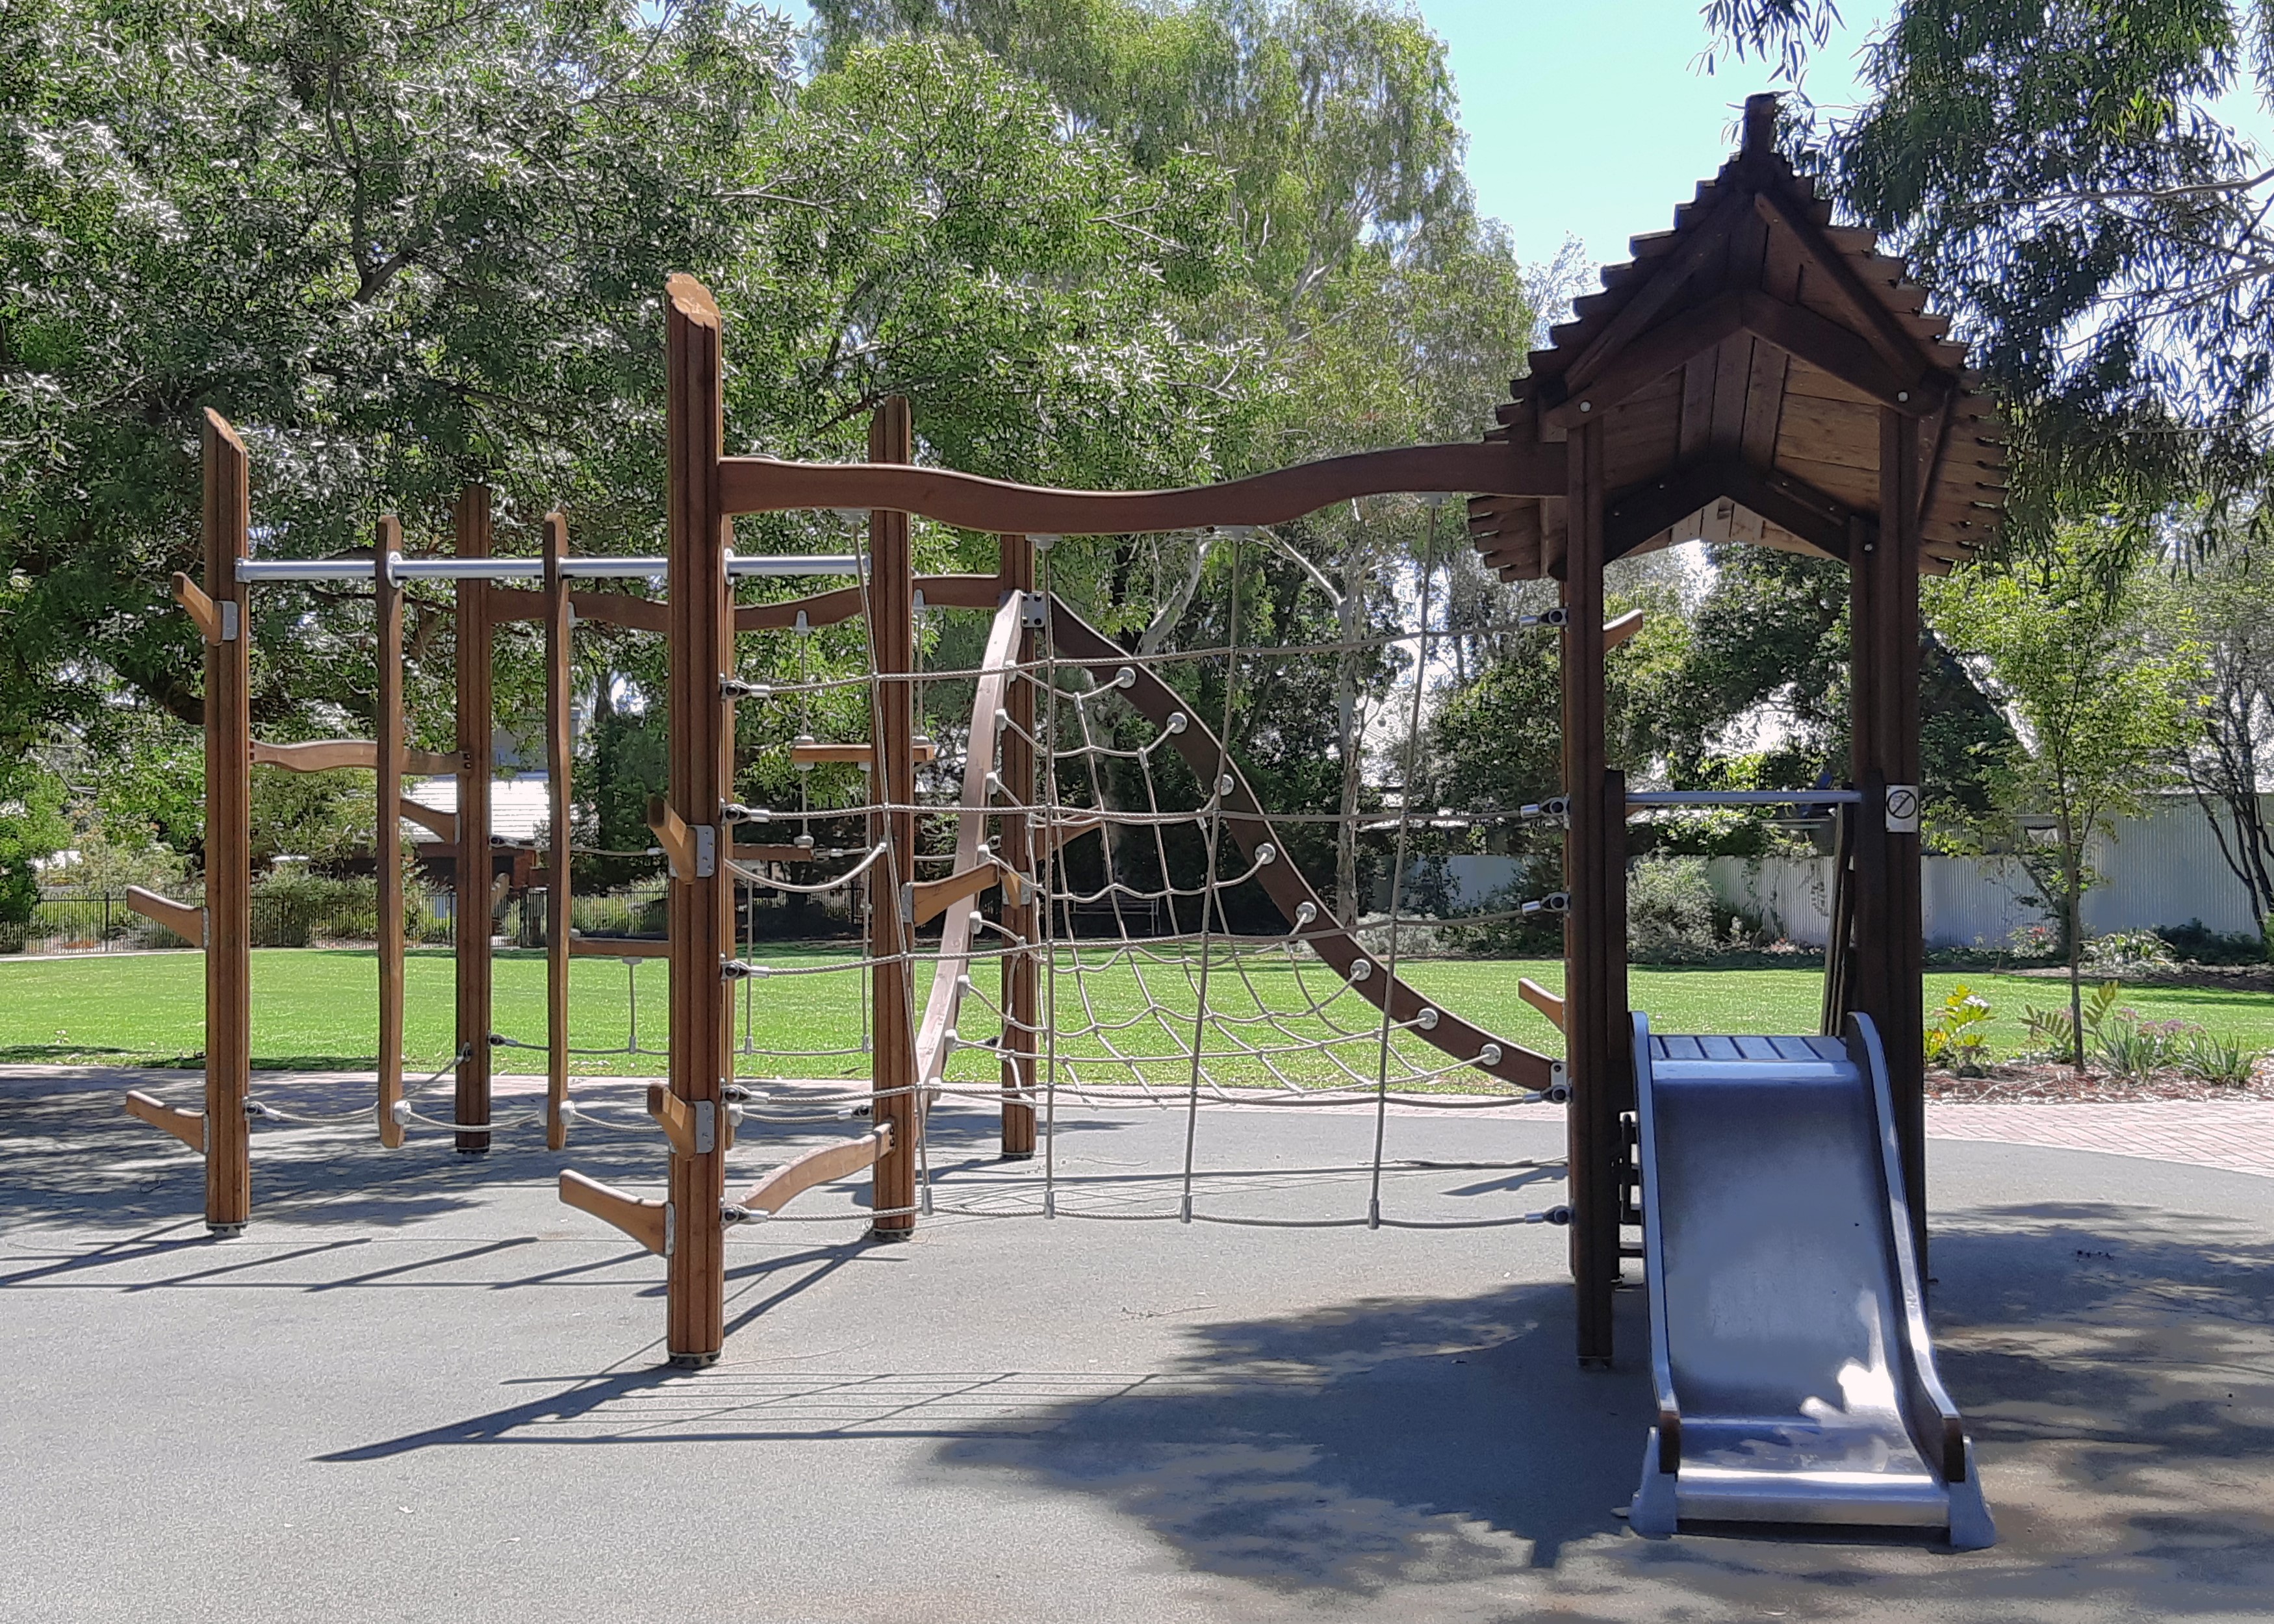 FErn-Avenue-playground-3.jpg